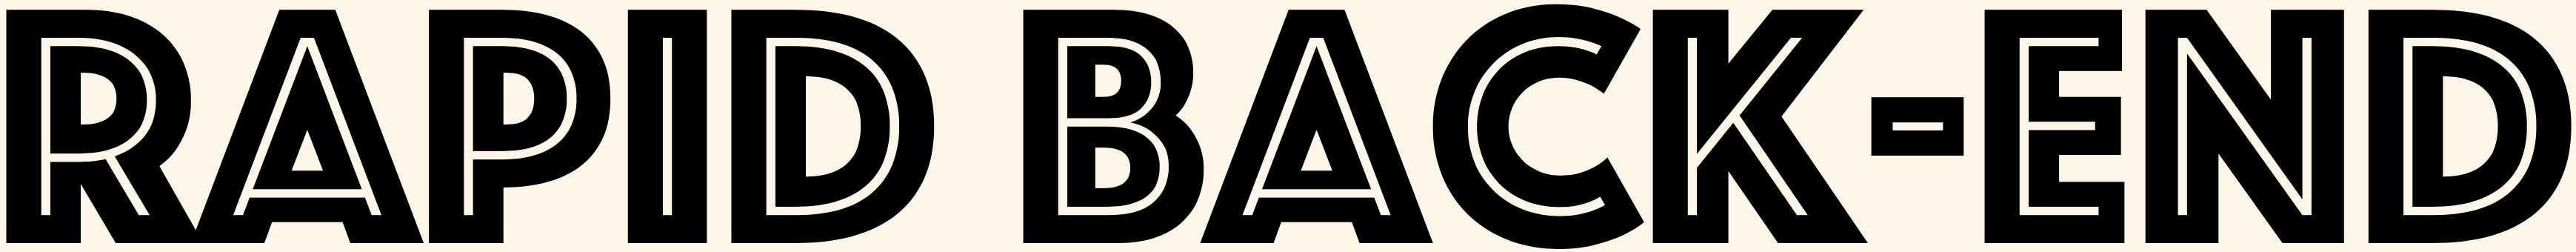 Rapid Back-End logo